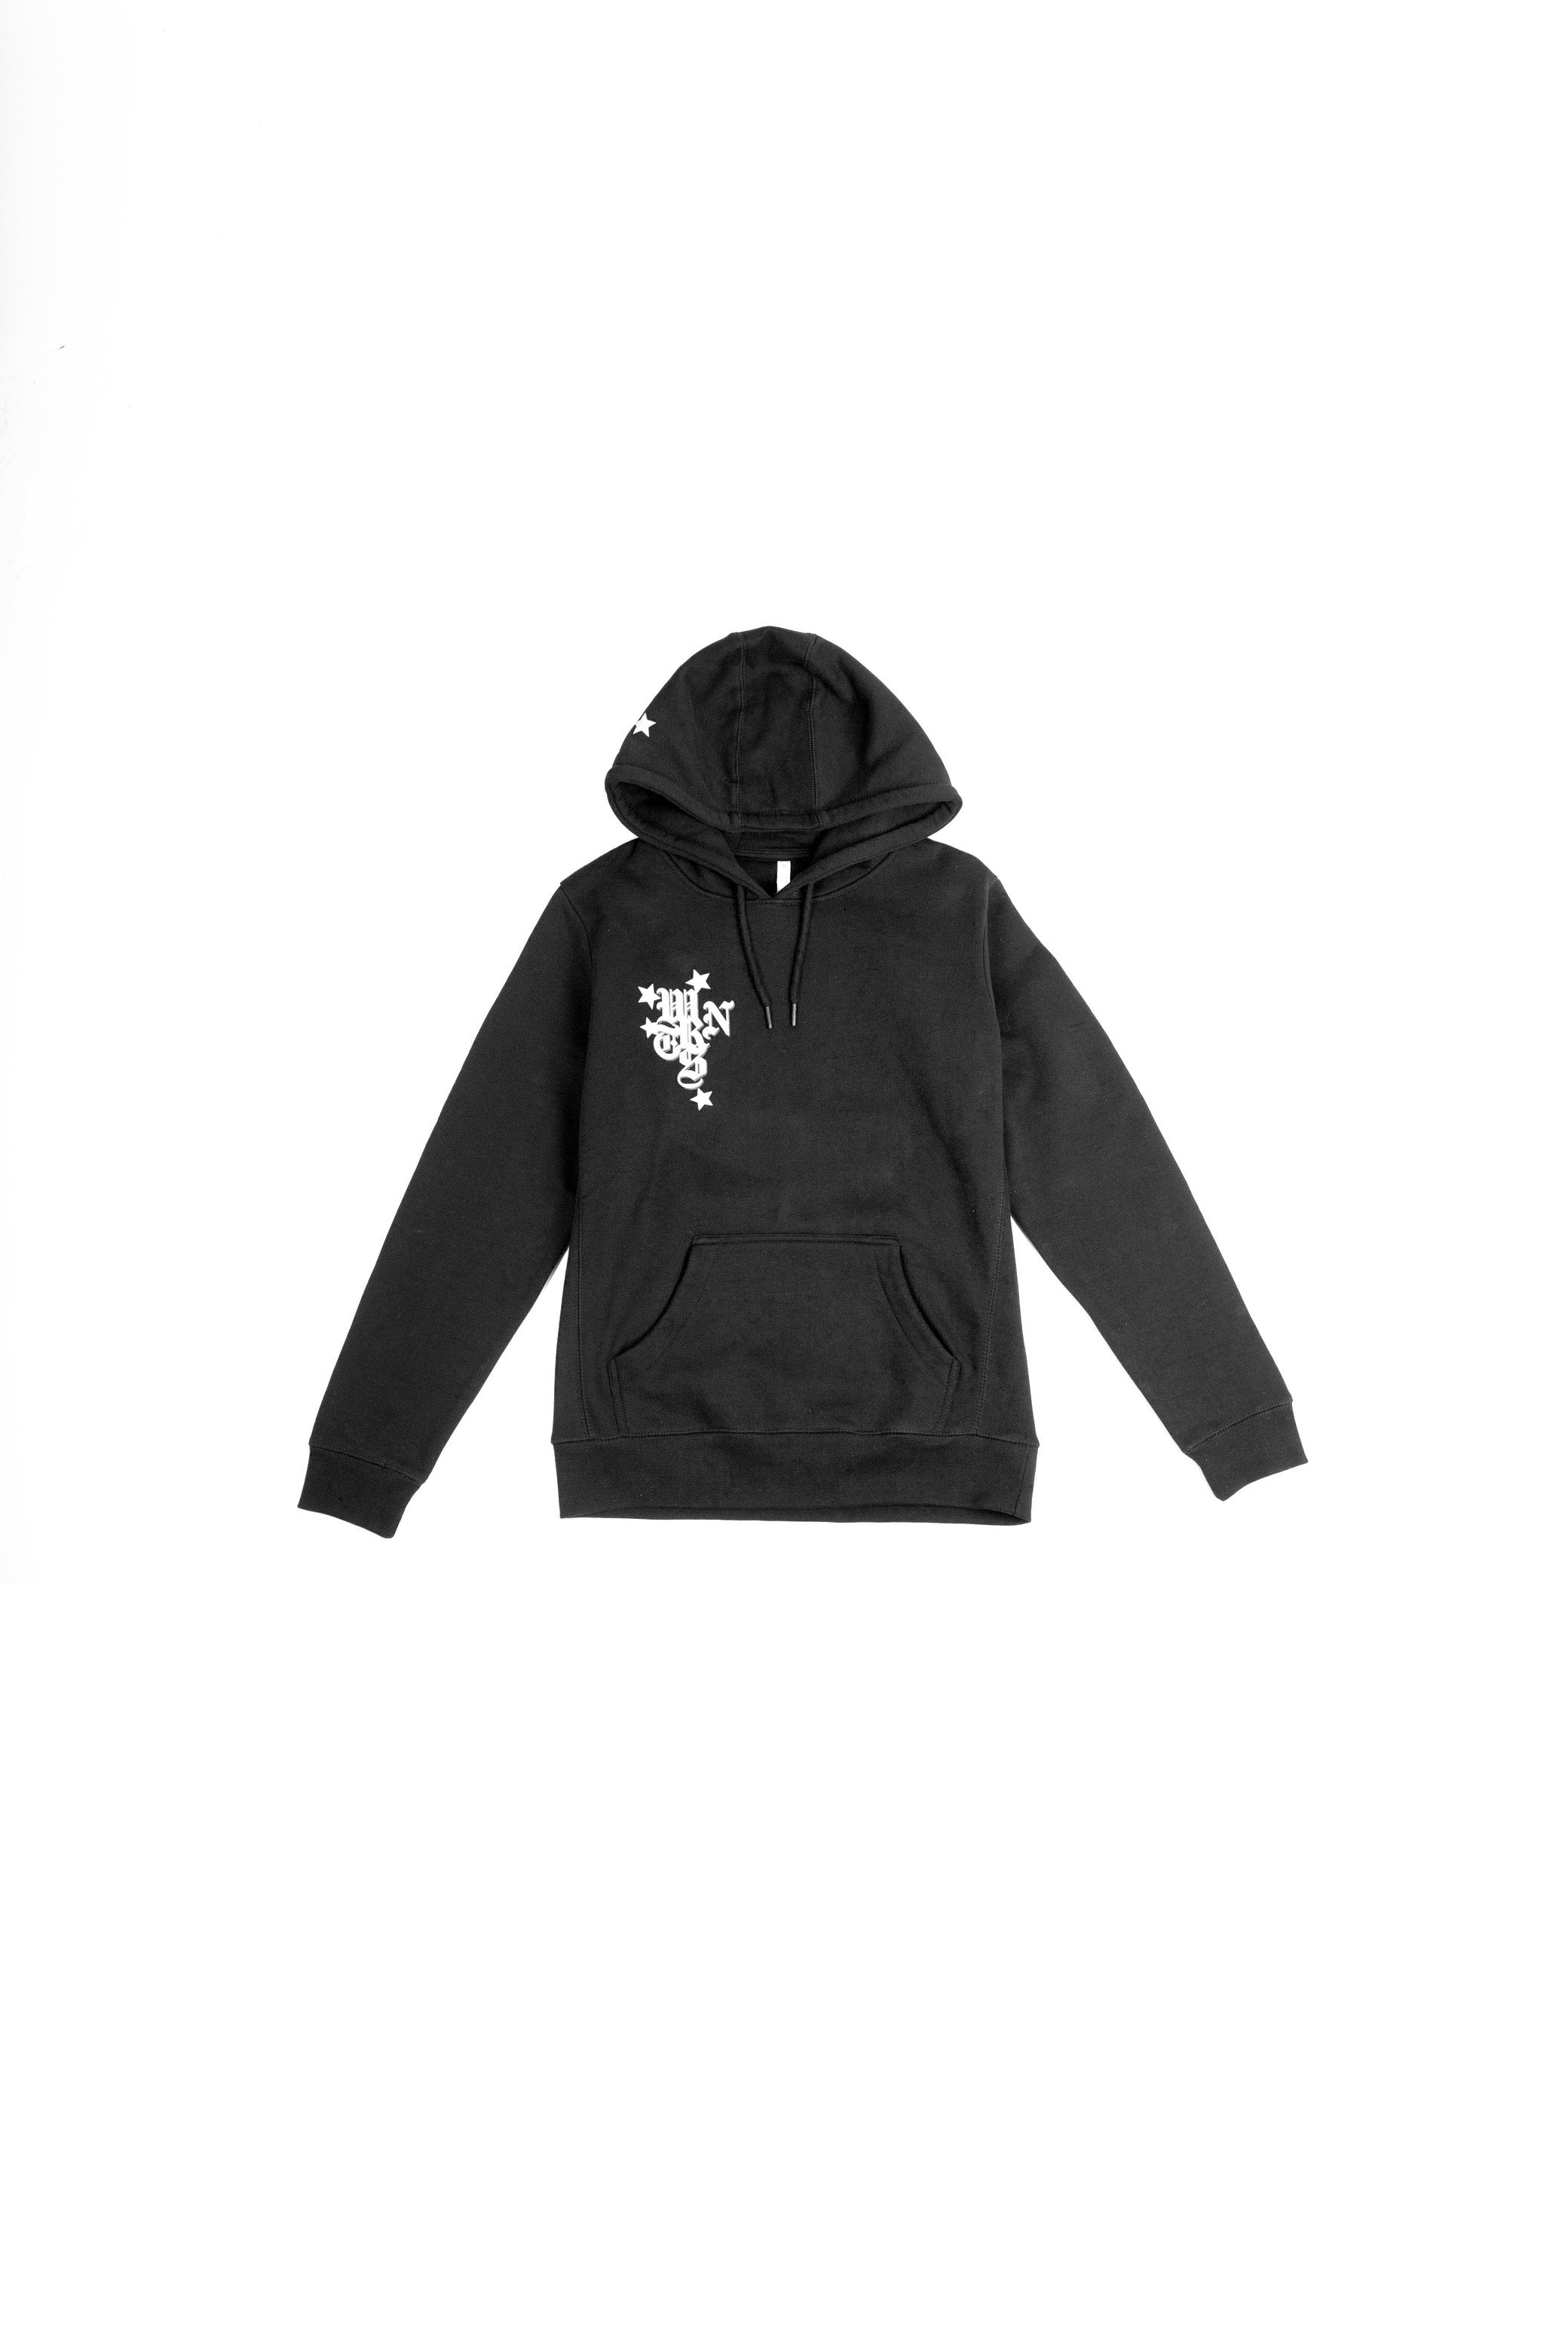 wrnts hoodie in black